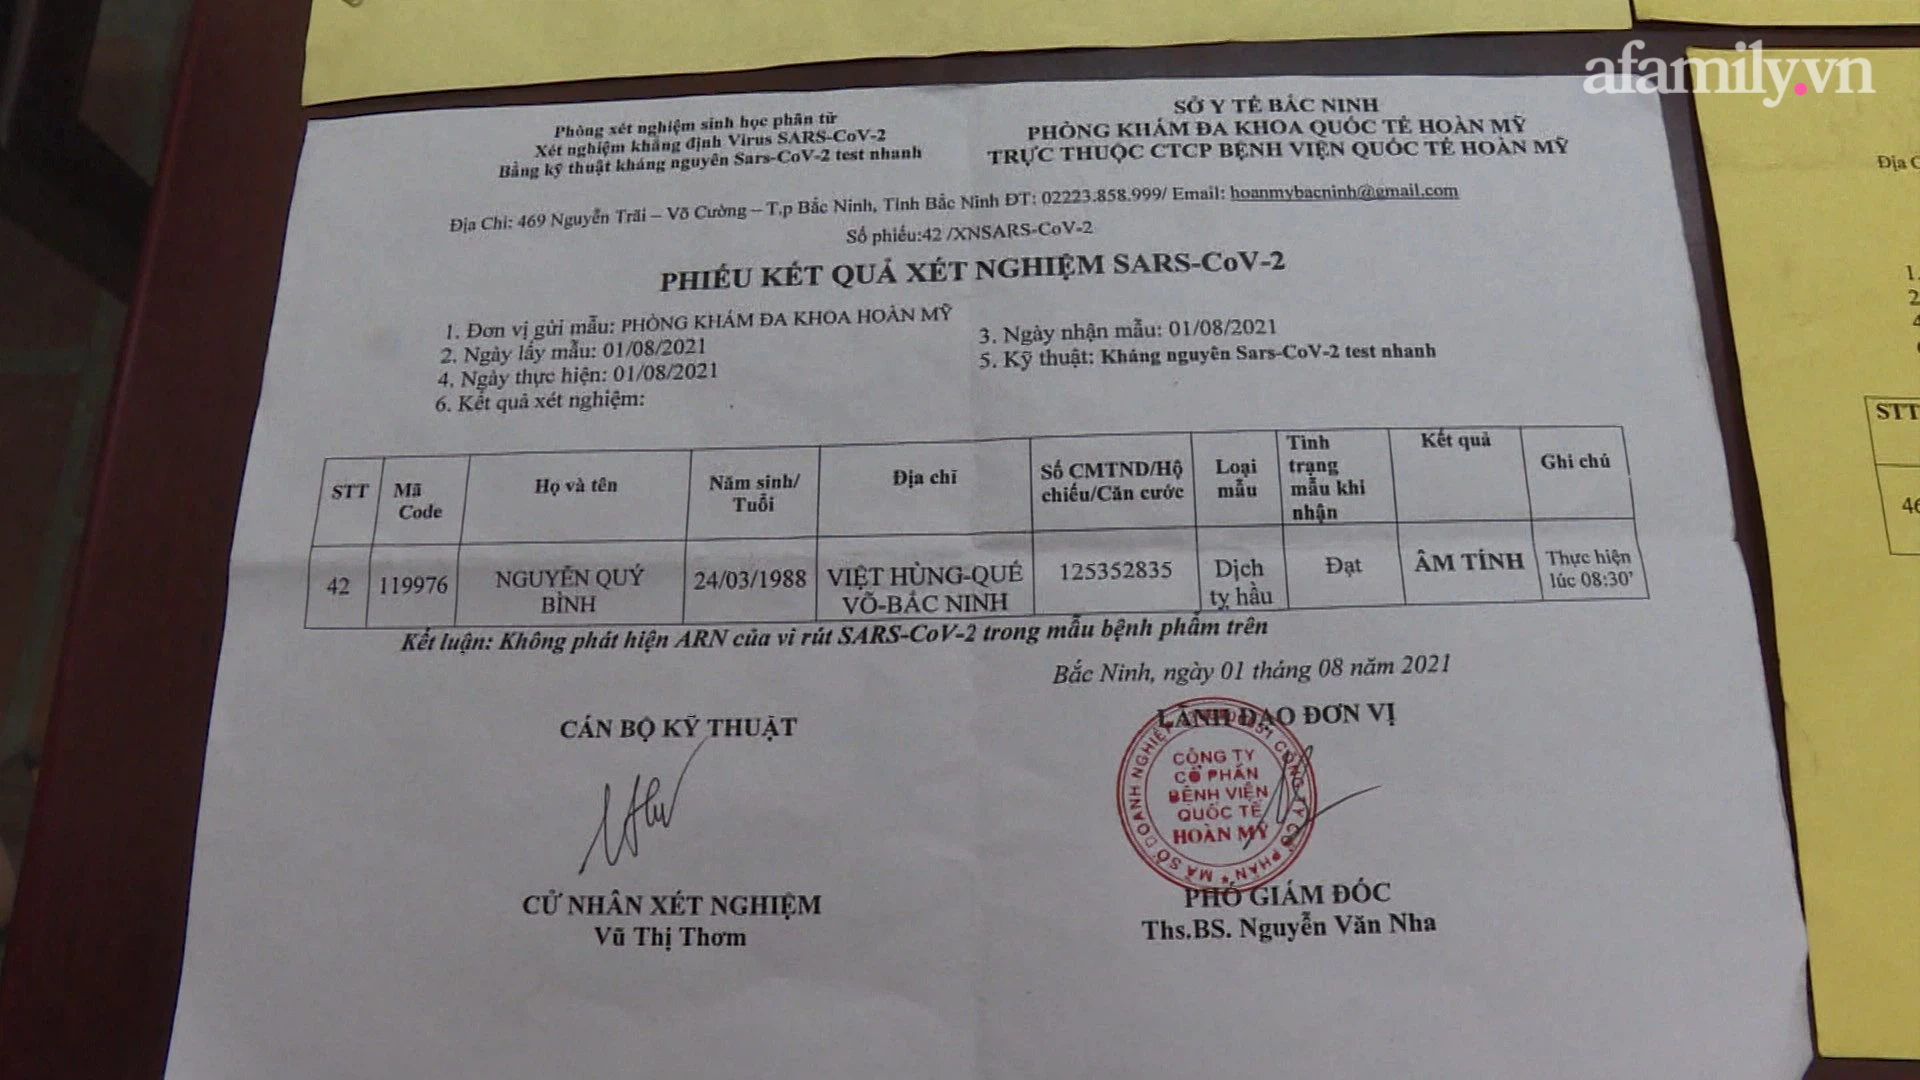 Do đó, Hải nghĩ cách làm giả phiếu kết quả xét nghiệm SARS-CoV-2 của Công ty Cổ phần Bệnh viện Quốc tế Hoàn Mỹ ở phường Võ Cường, Thành phố Bắc Ninh.